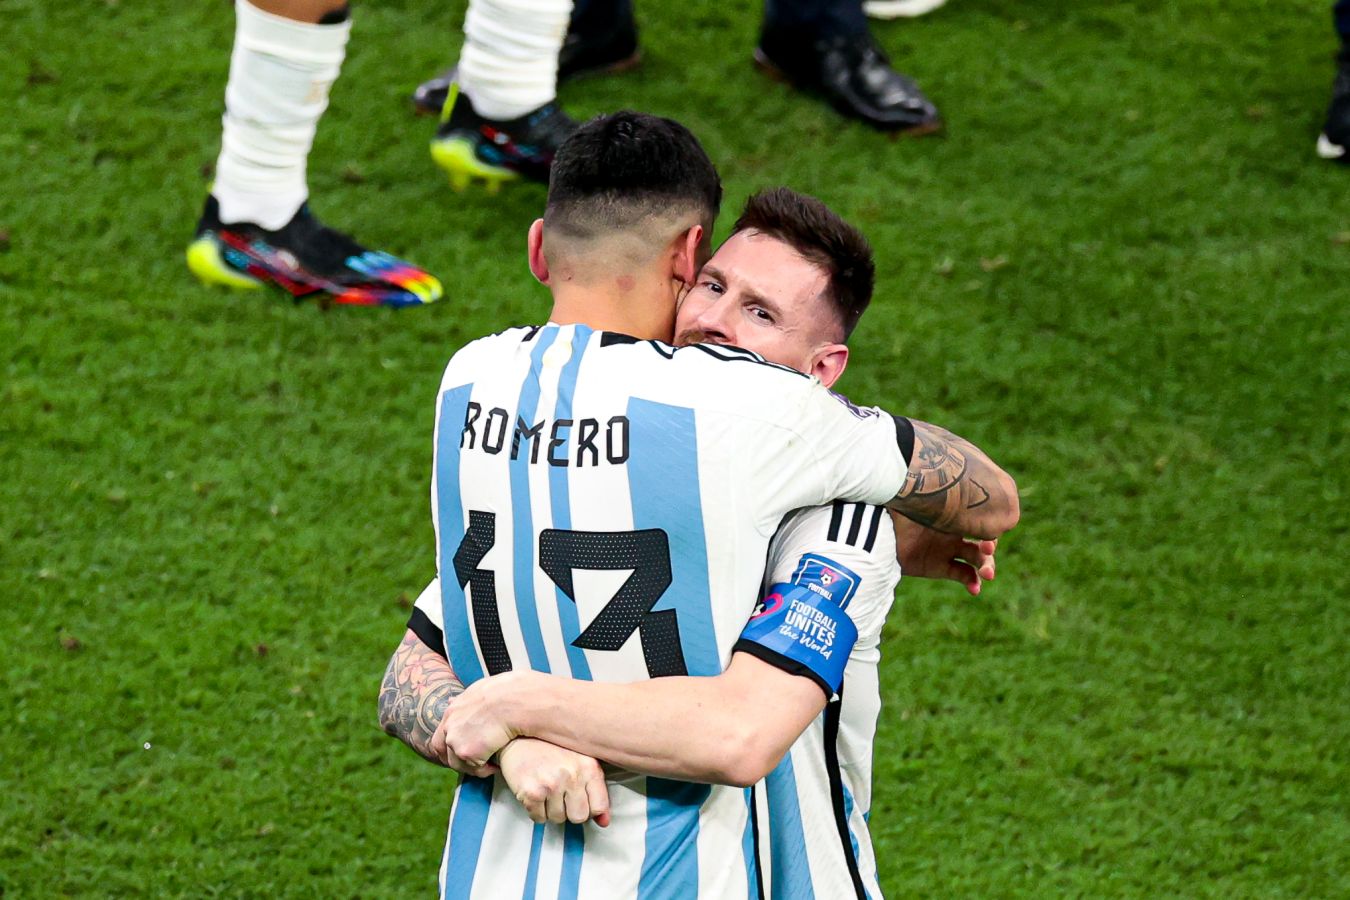 Защитник сборной Аргентины объяснил, почему кричал на Мбаппе после гола Месси в финале ЧМ